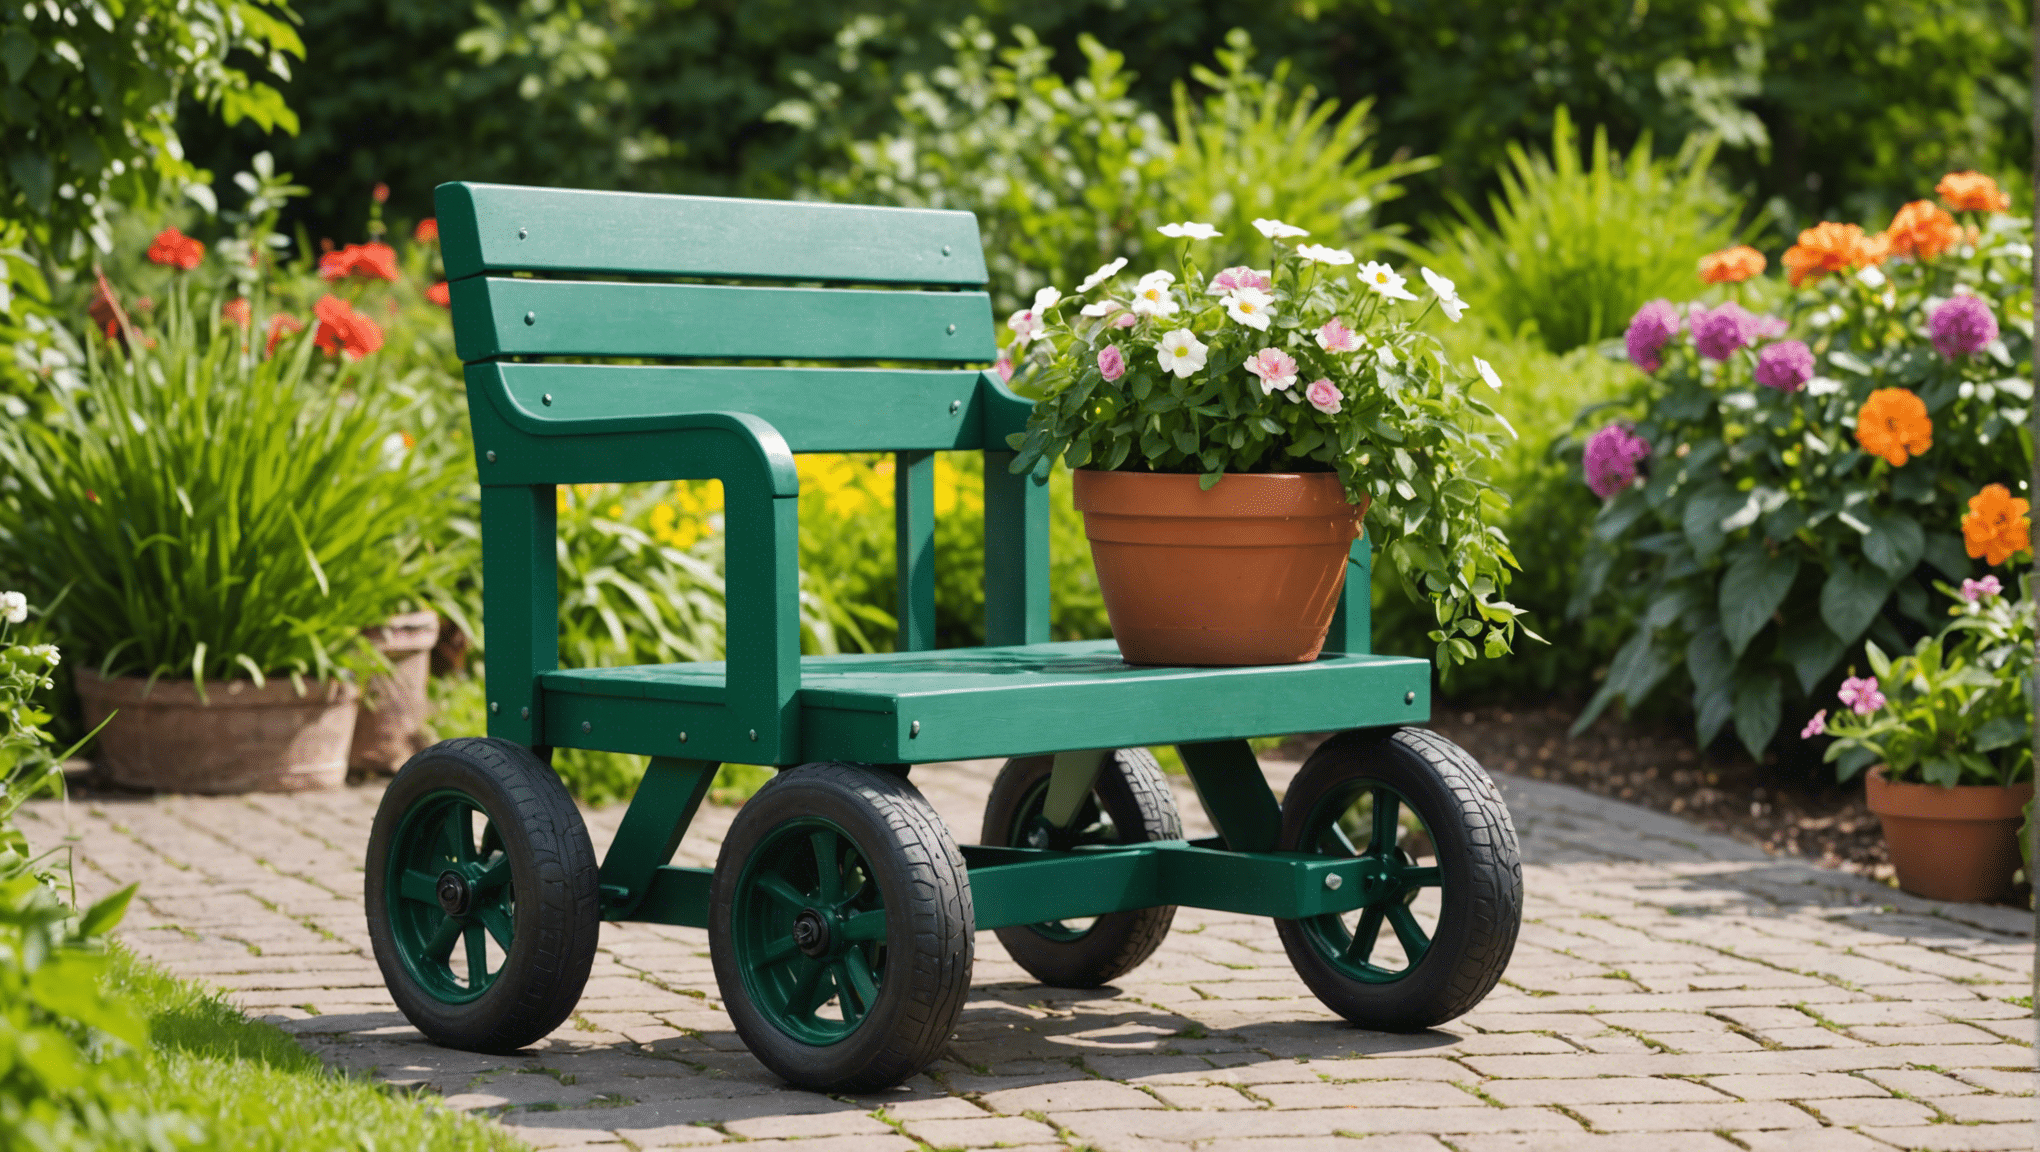 Ontdek de voordelen van het investeren in een tuinstoel met wielen en transformeer uw tuinervaring. Ontdek hoe dit veelzijdige gereedschap uw comfort en productiviteit in de tuin kan verbeteren.